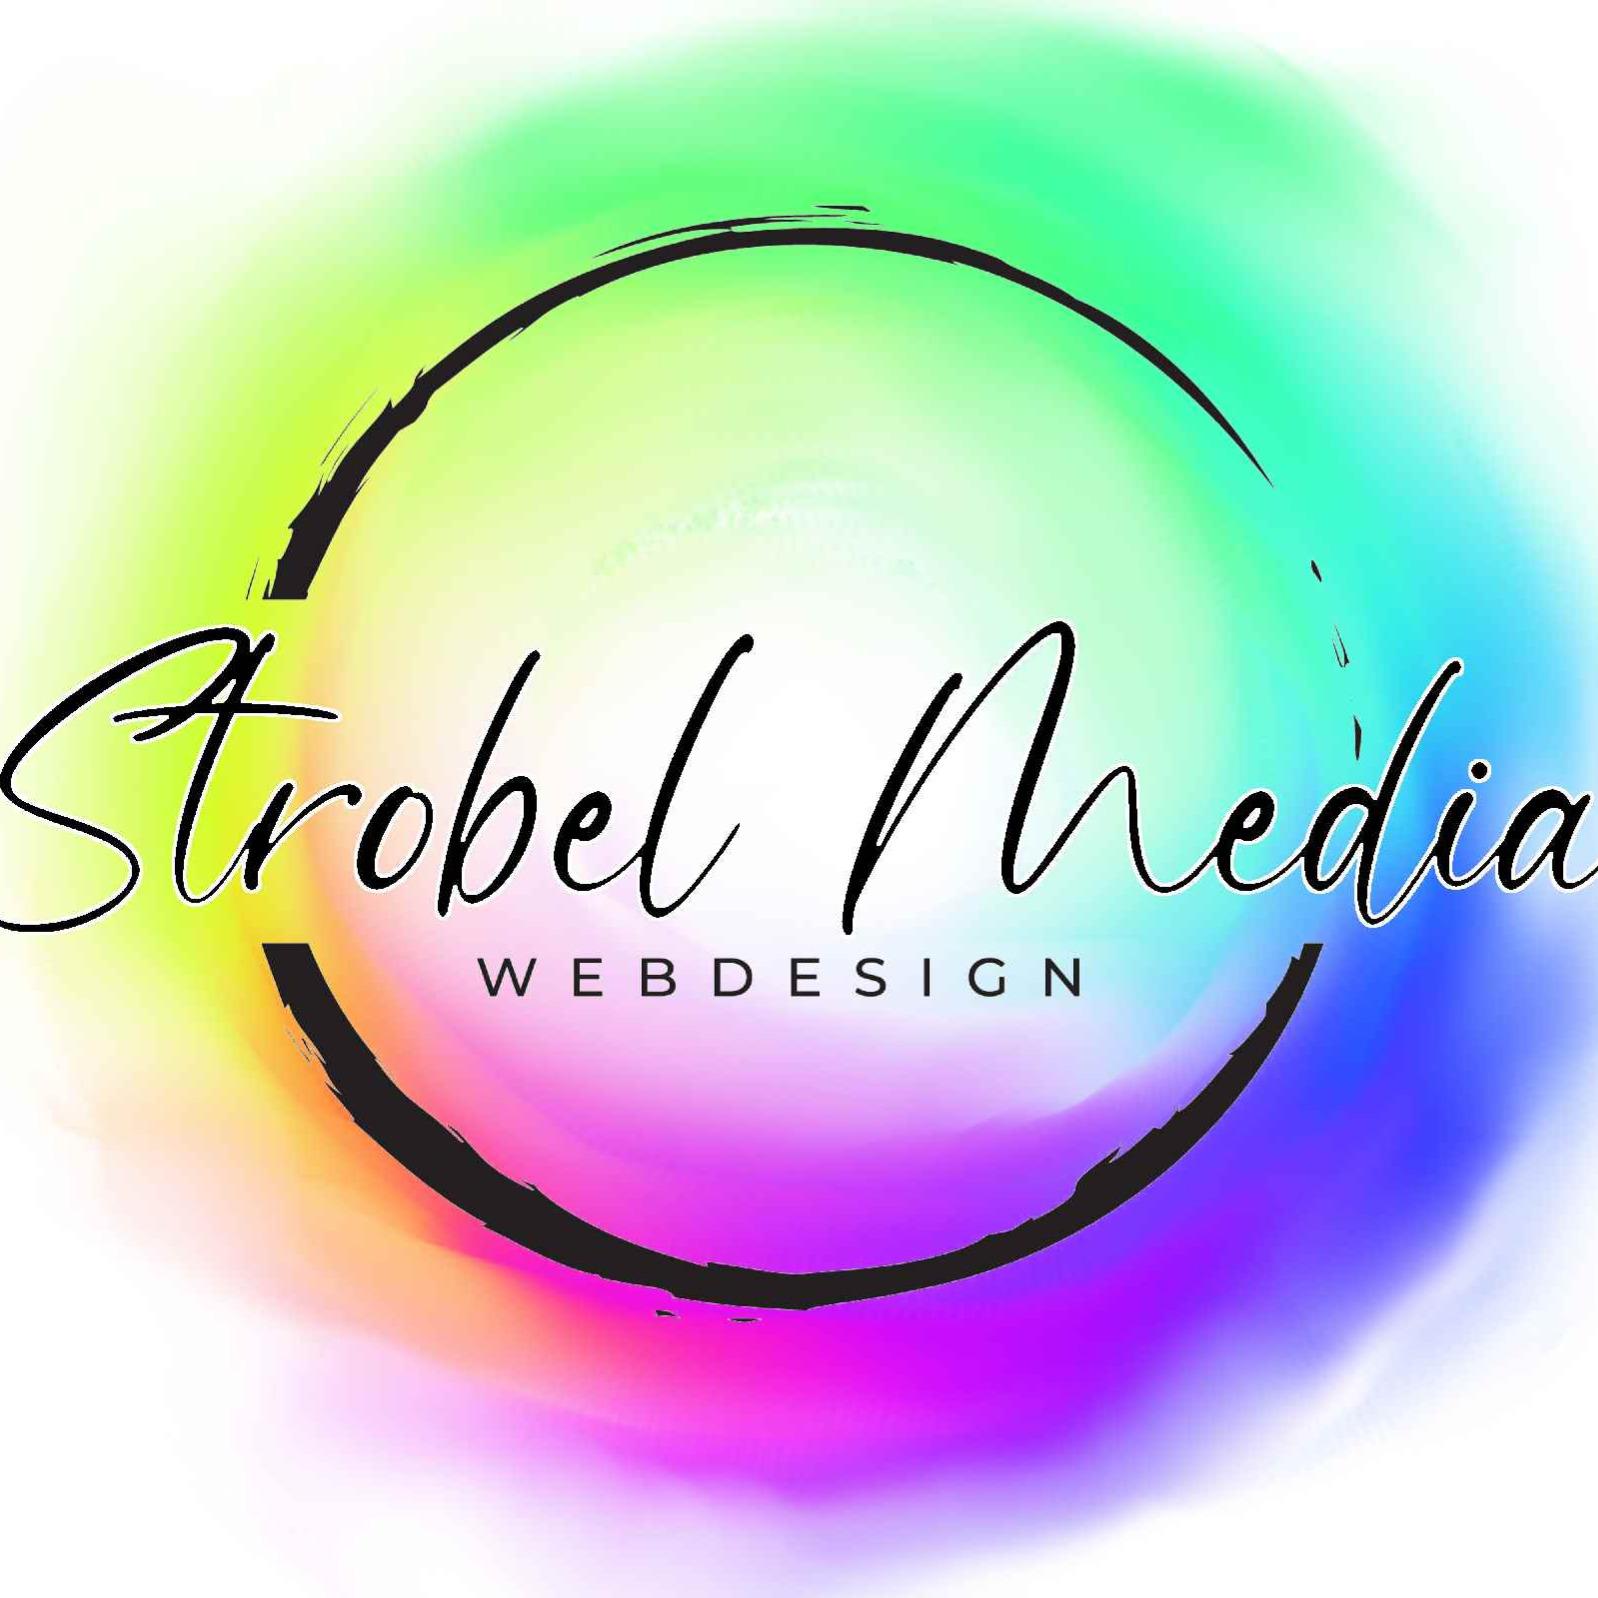 Webdesign Strobel Media in Rosenfeld - Logo